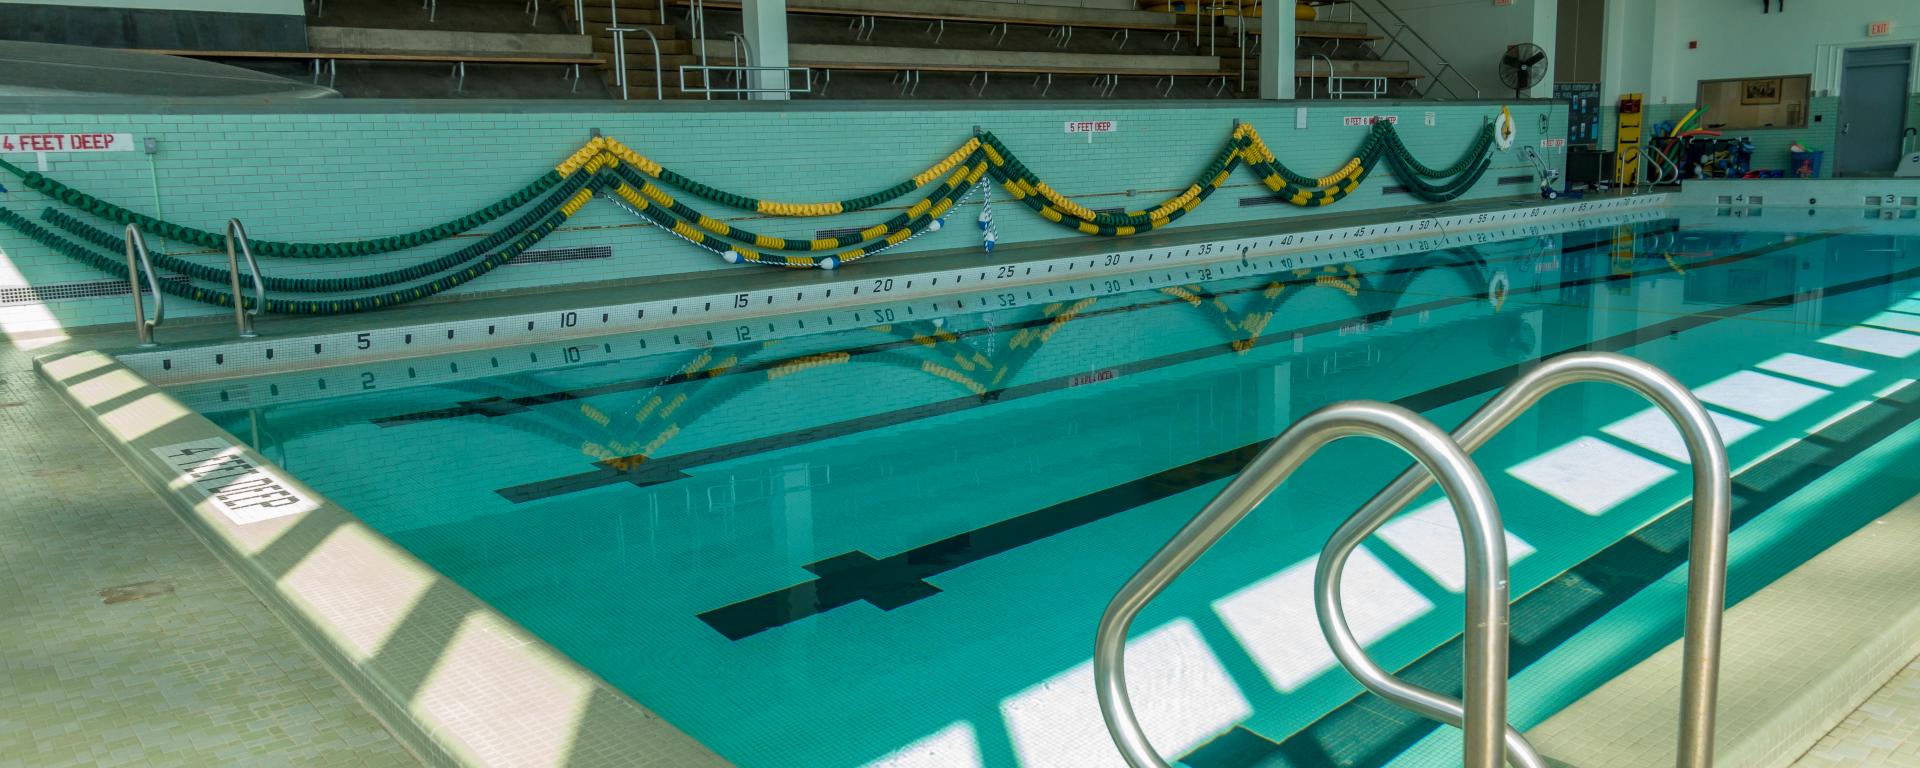 Lee Hall Pool | Campus Recreation